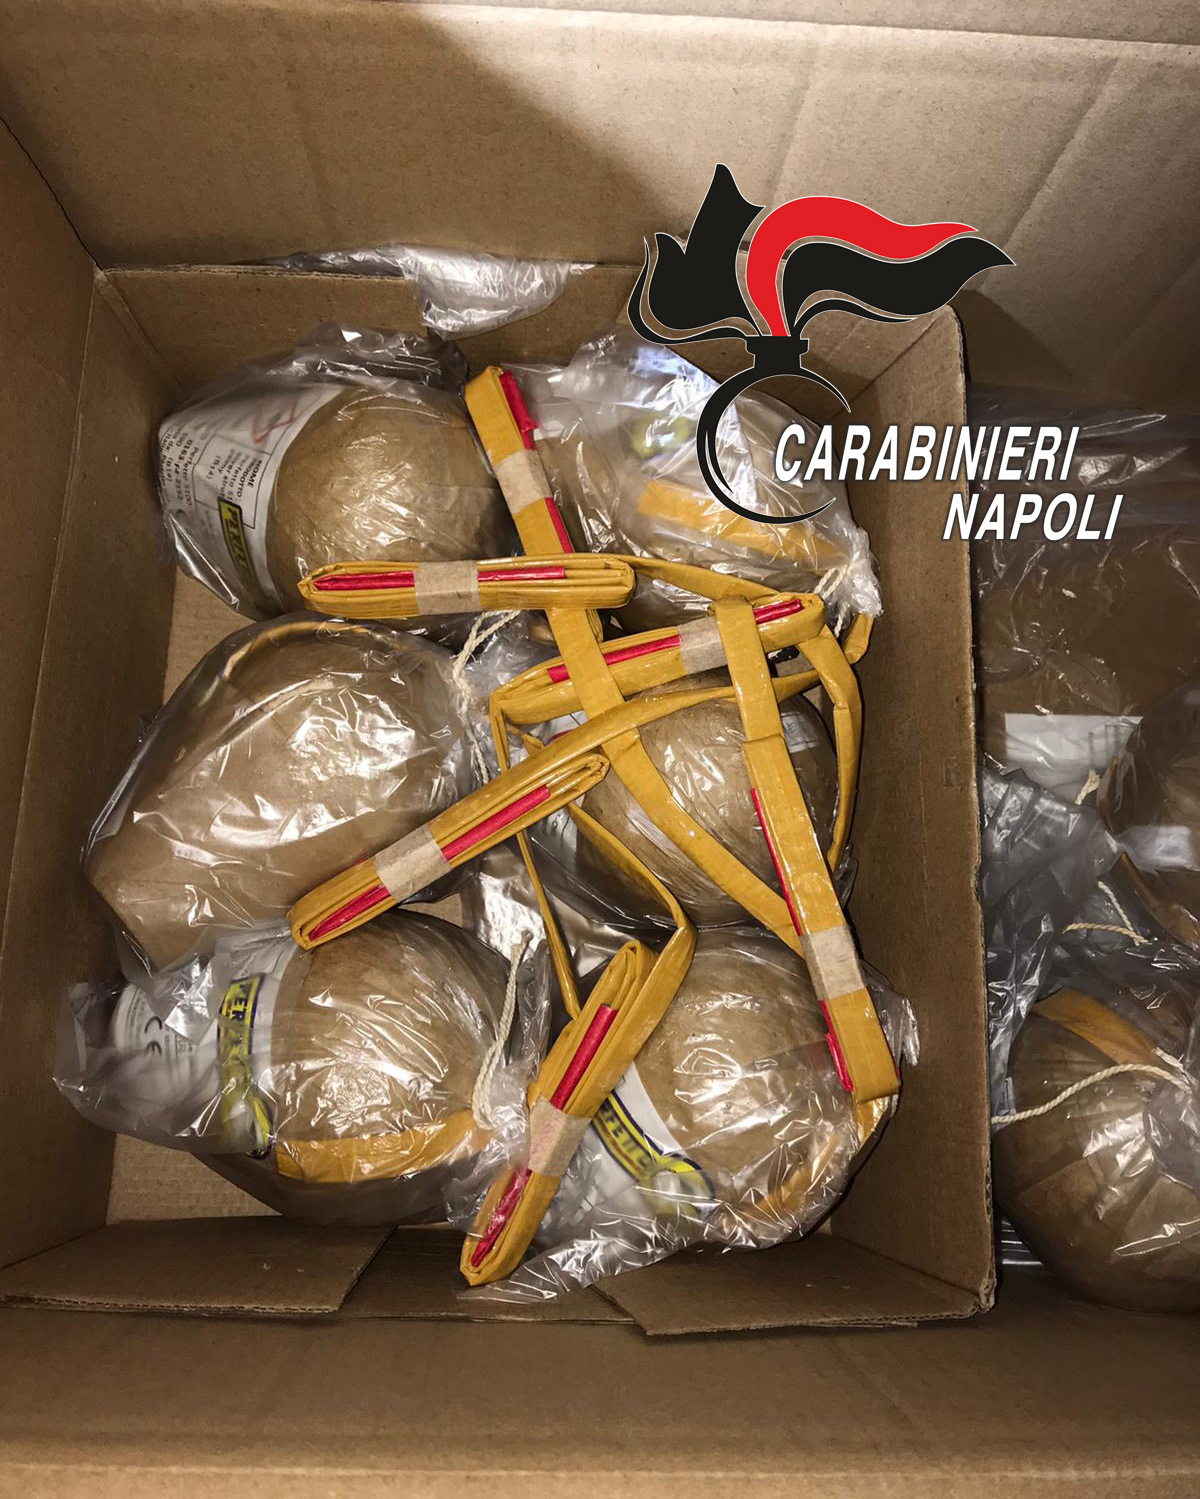 Quintali di botti illegali sequestrati in Provincia di Napoli per Capodanno